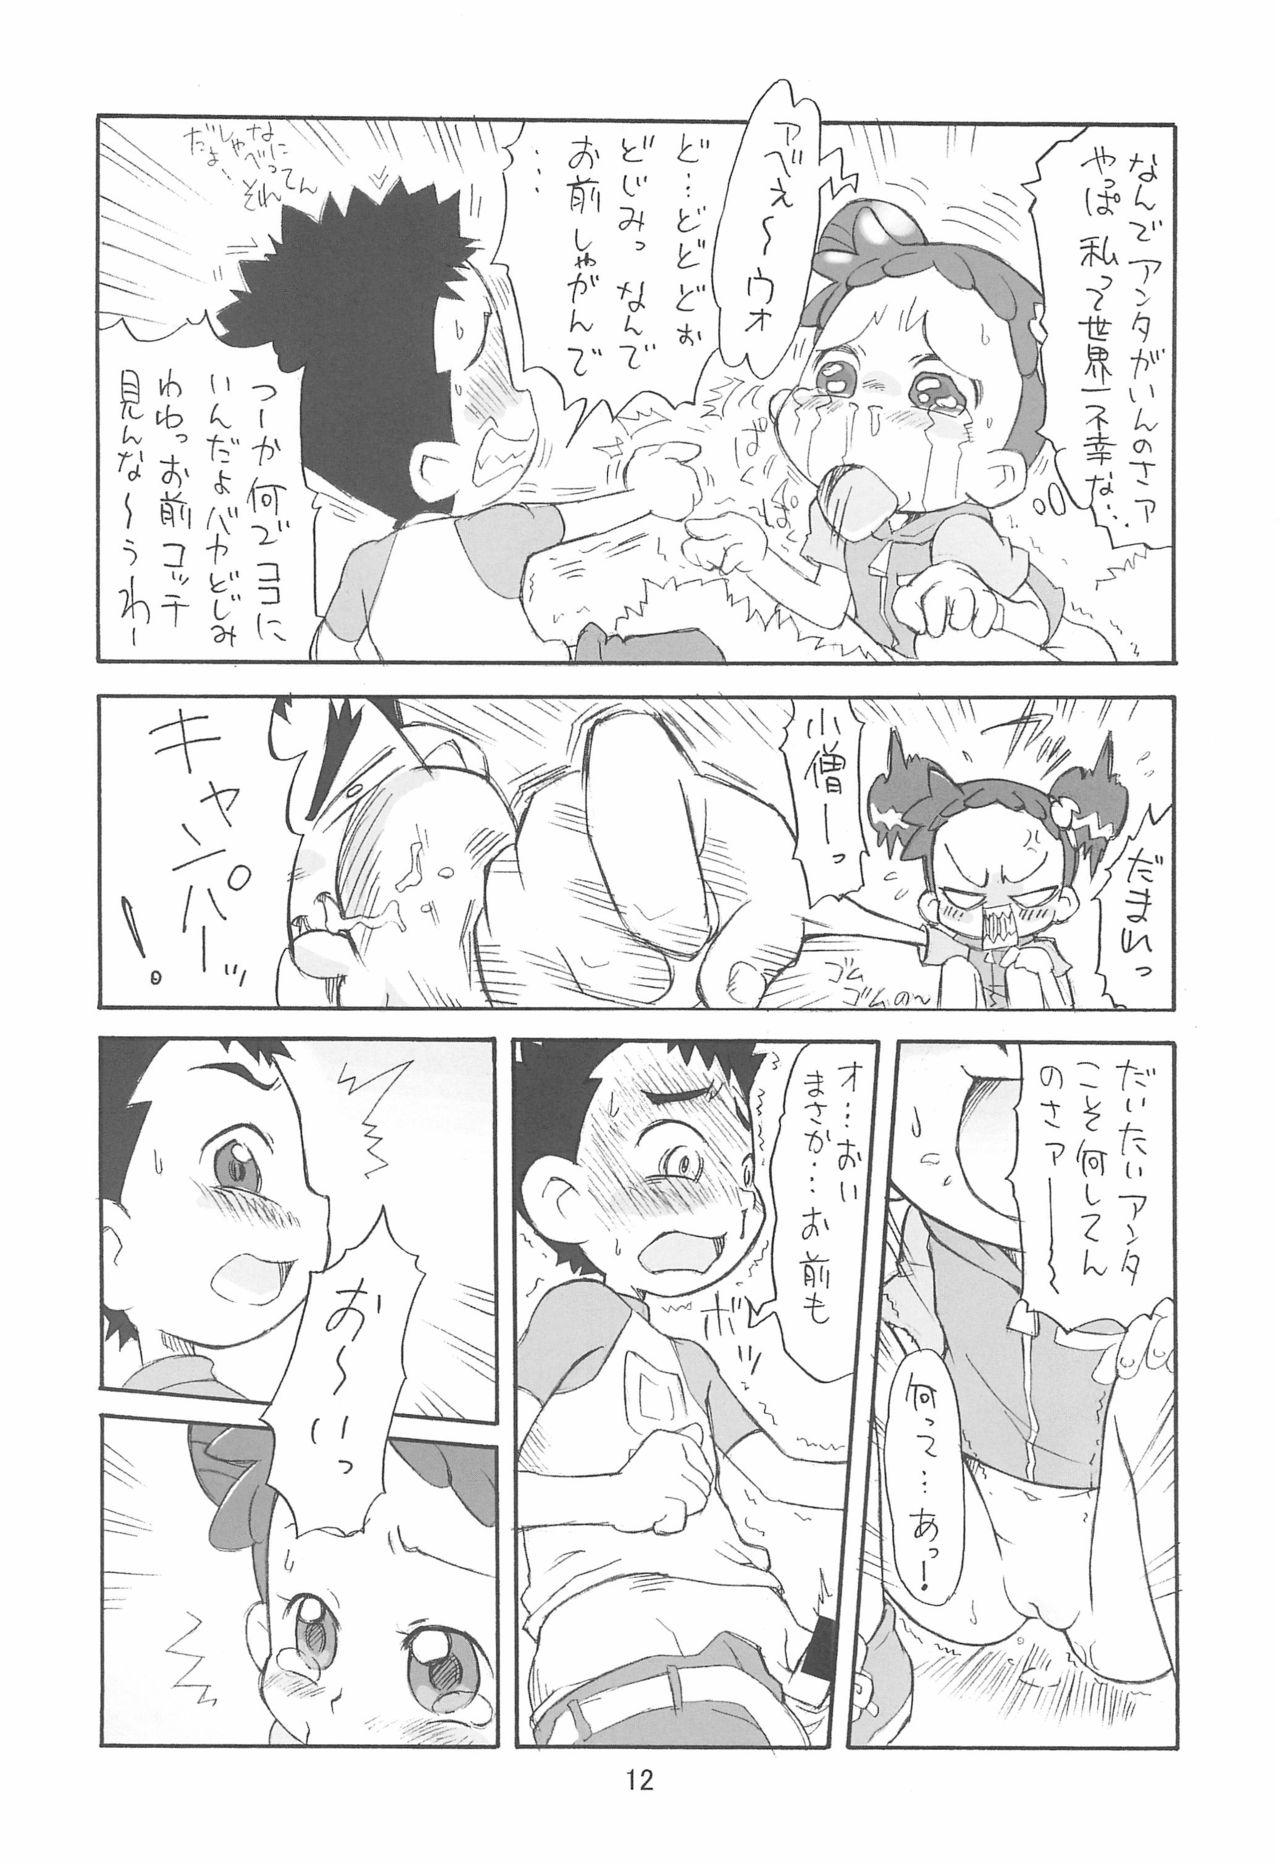 Mas Pipipupu Fukkoku Ban - Ojamajo doremi | magical doremi Putas - Page 12